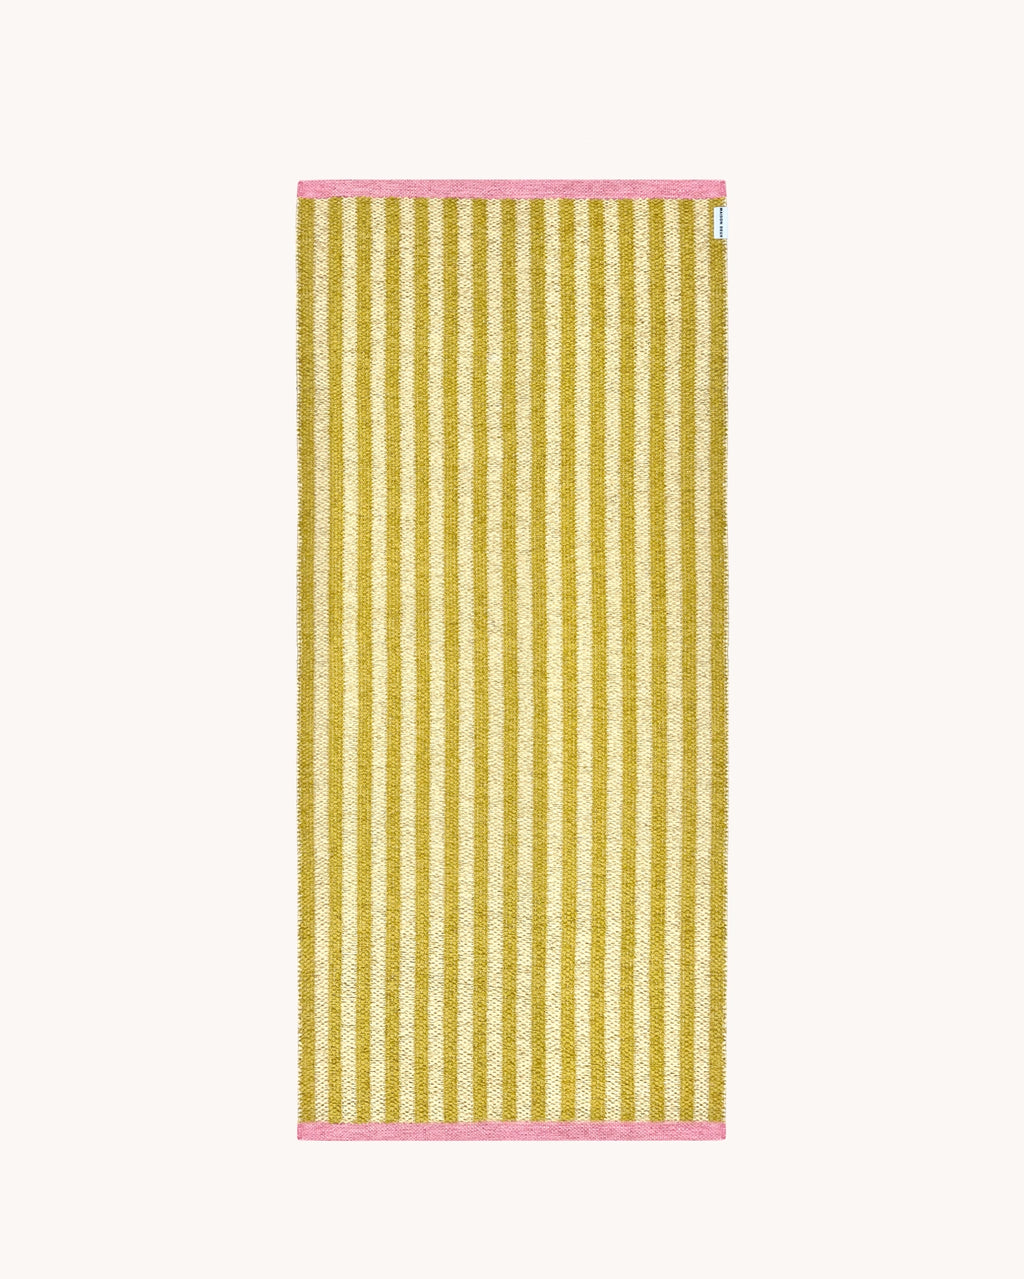 Plastic Rug Stripe Sunburst 70 x 150 cm